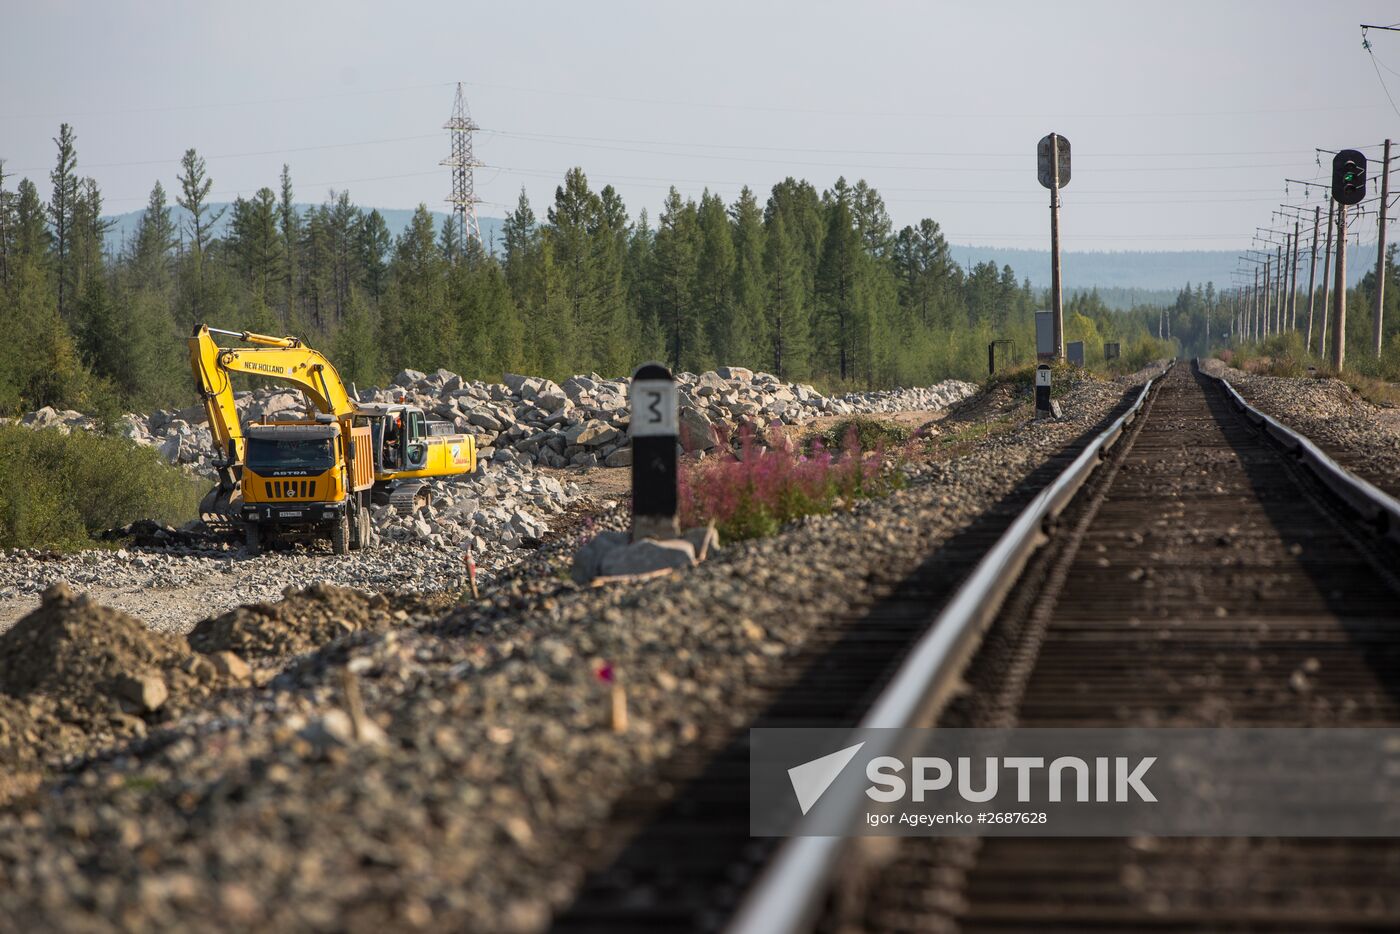 Construction of BAM-2 (Baikal Amur Railway) in the Amur Region